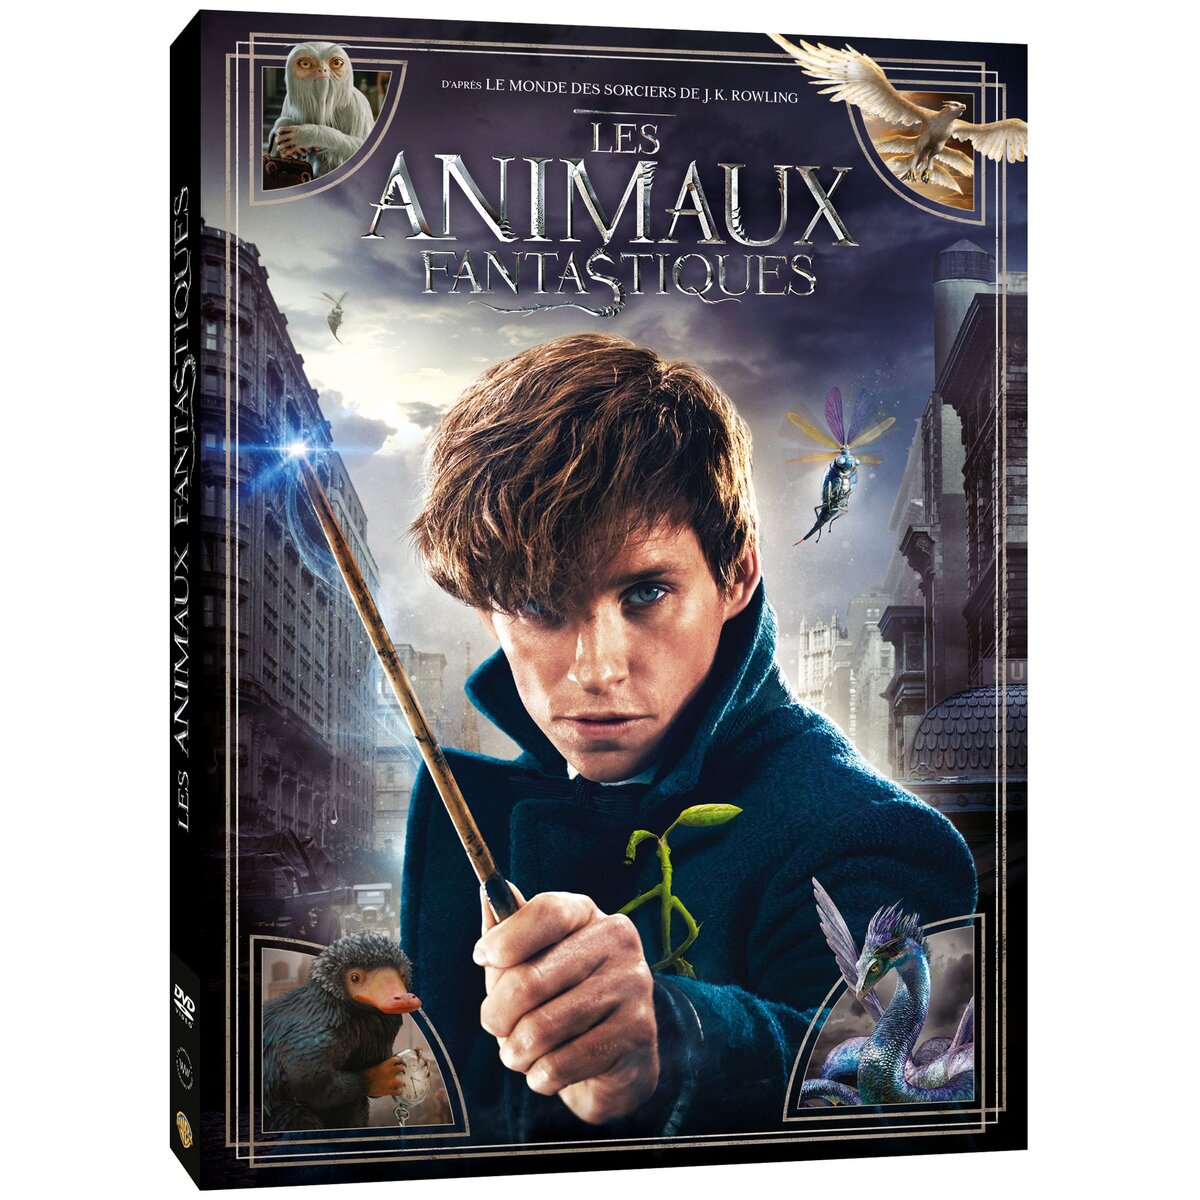  Les Animaux fantastiques - DVD